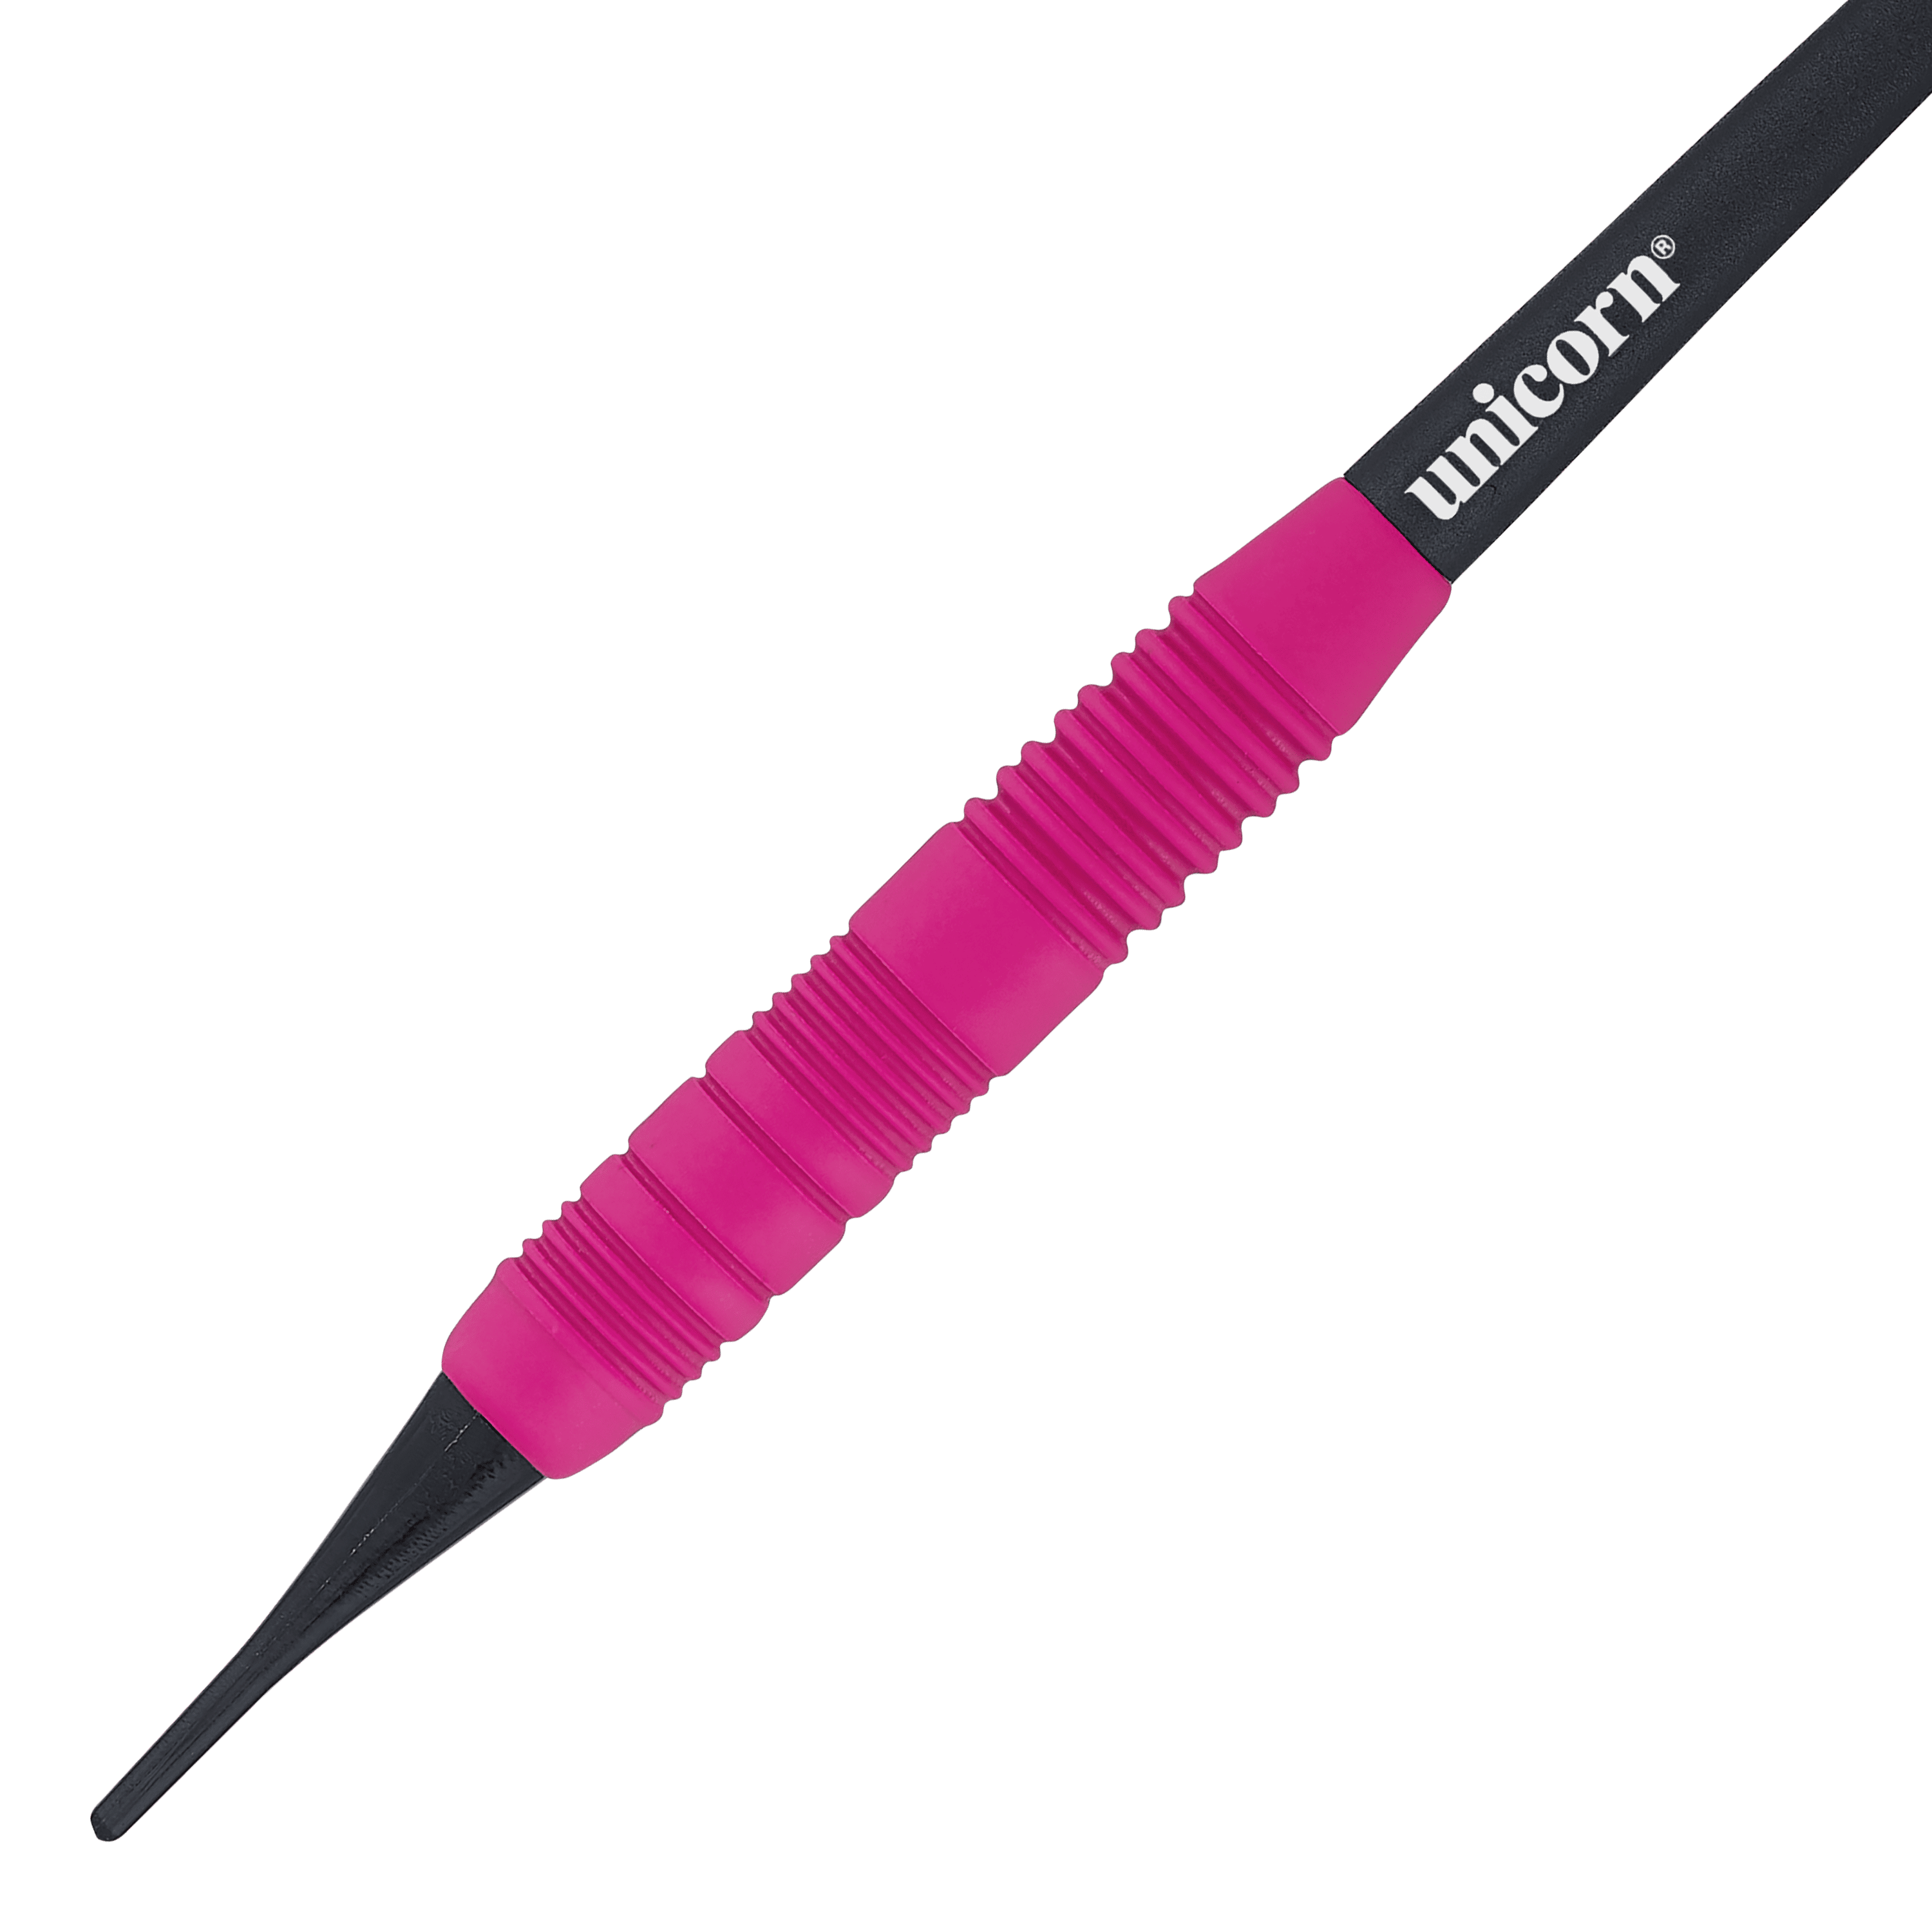 Unicorn Core Plus Rubberised Pink Softdarts - 19g